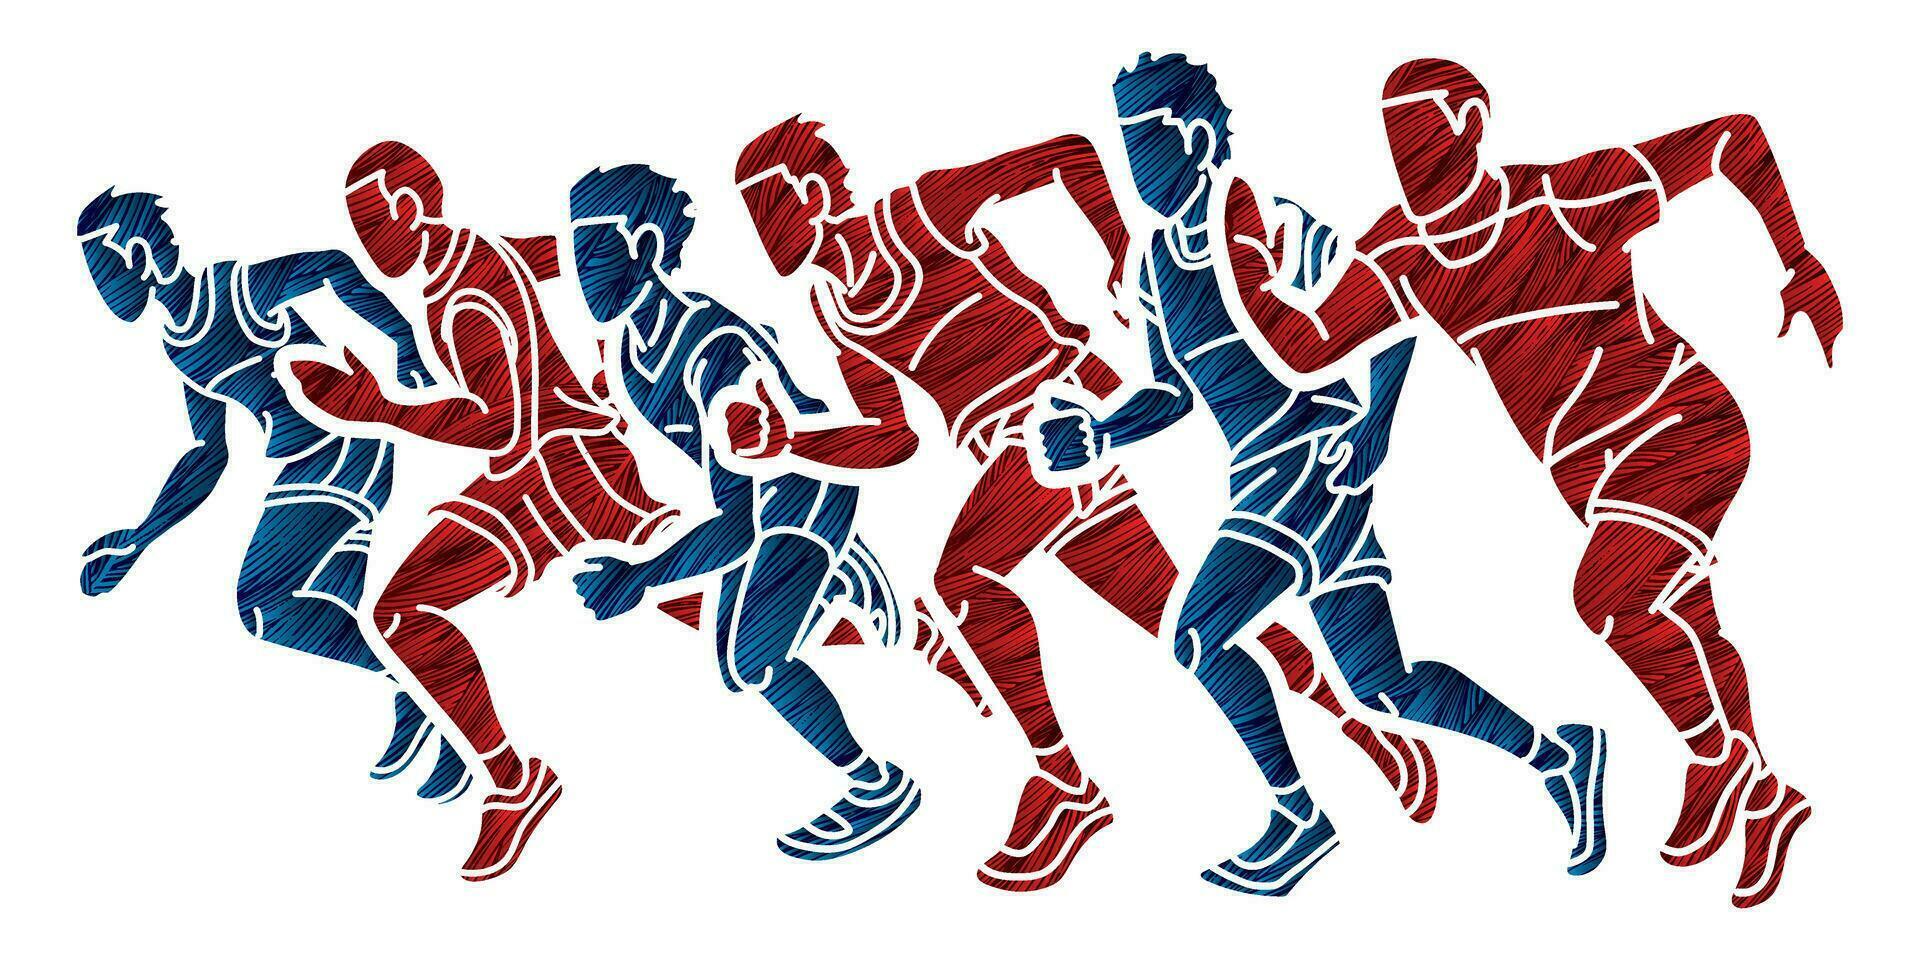 grupo de corredor acción comienzo corriendo hombres correr juntos dibujos animados deporte gráfico vector